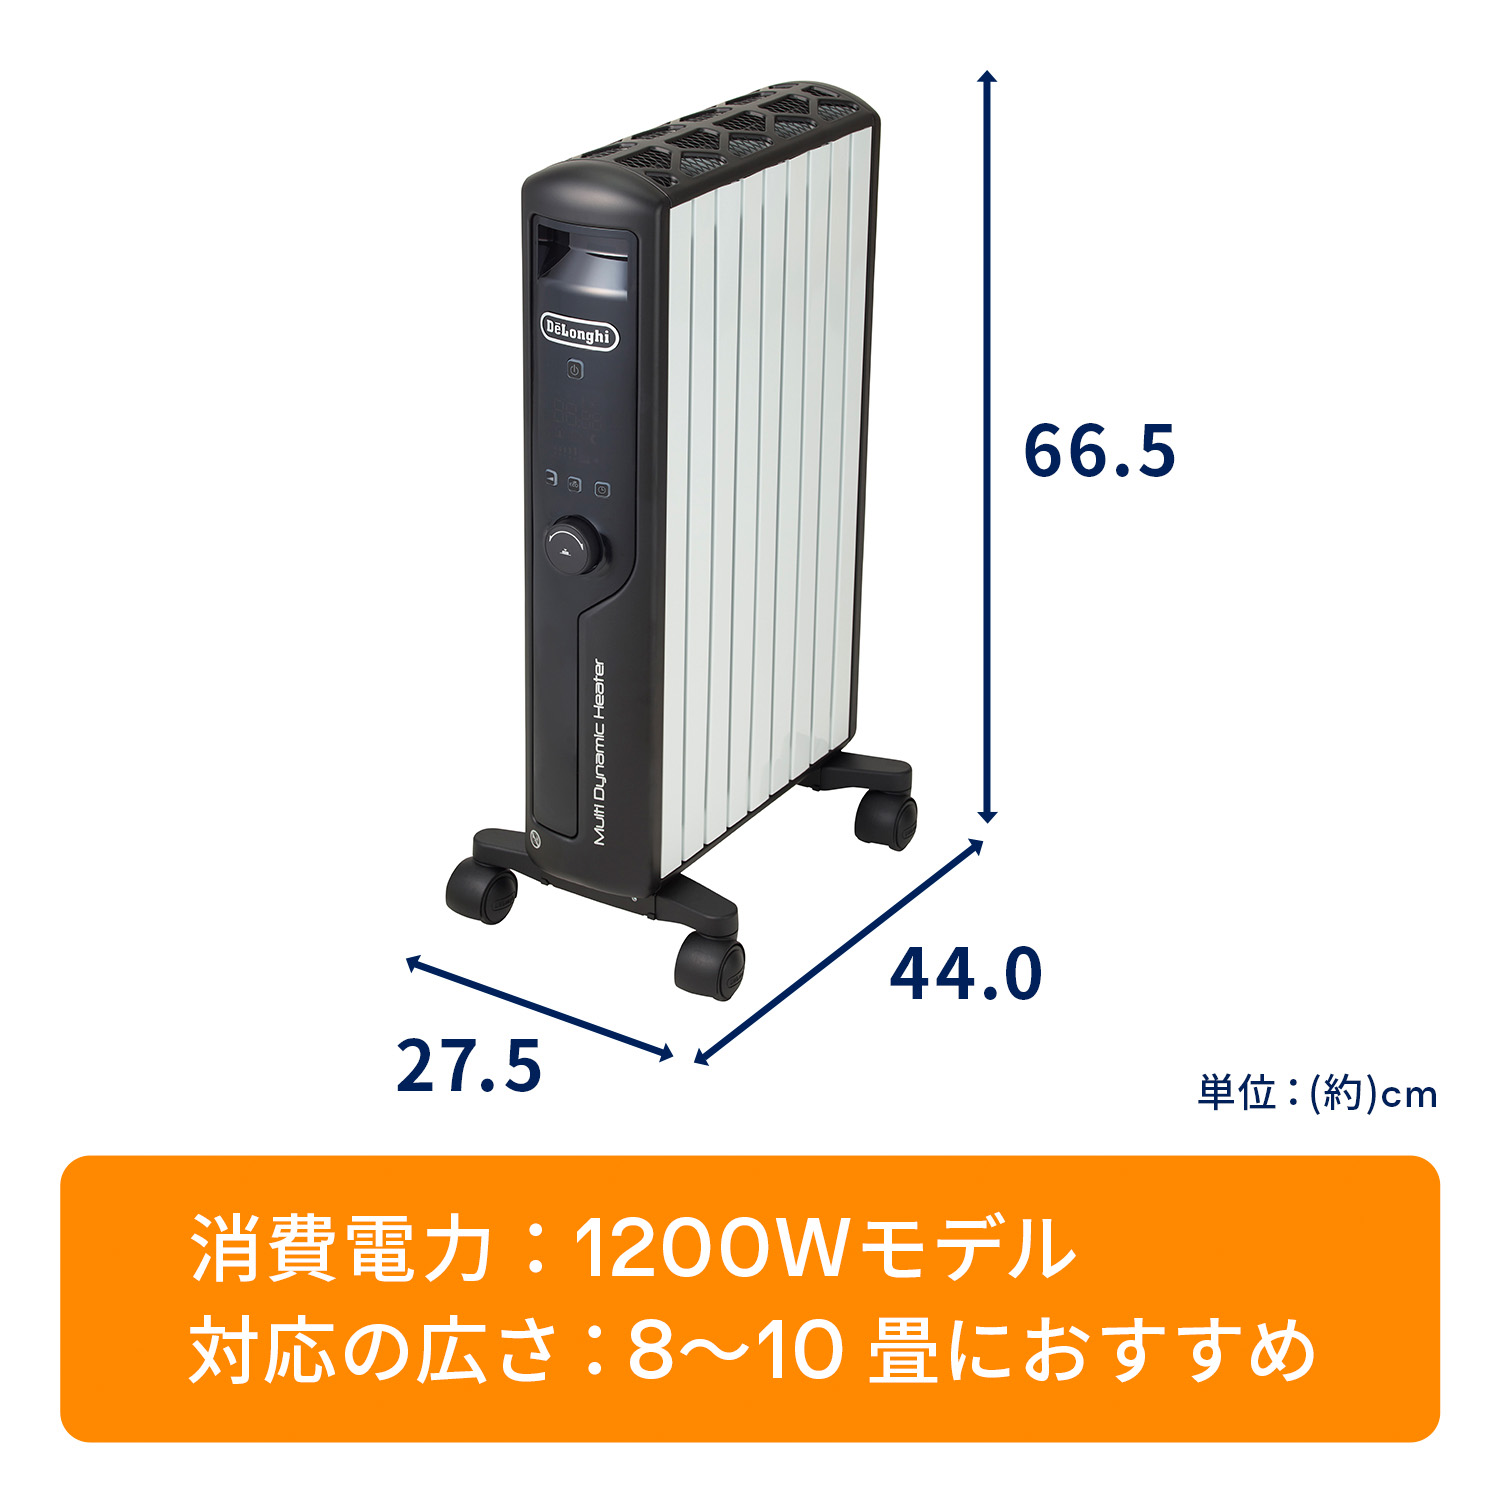 デロンギ マルチダイナミックヒーター MDHU12-BK オイルヒーター 冷暖房/空調 家電・スマホ・カメラ 上品な